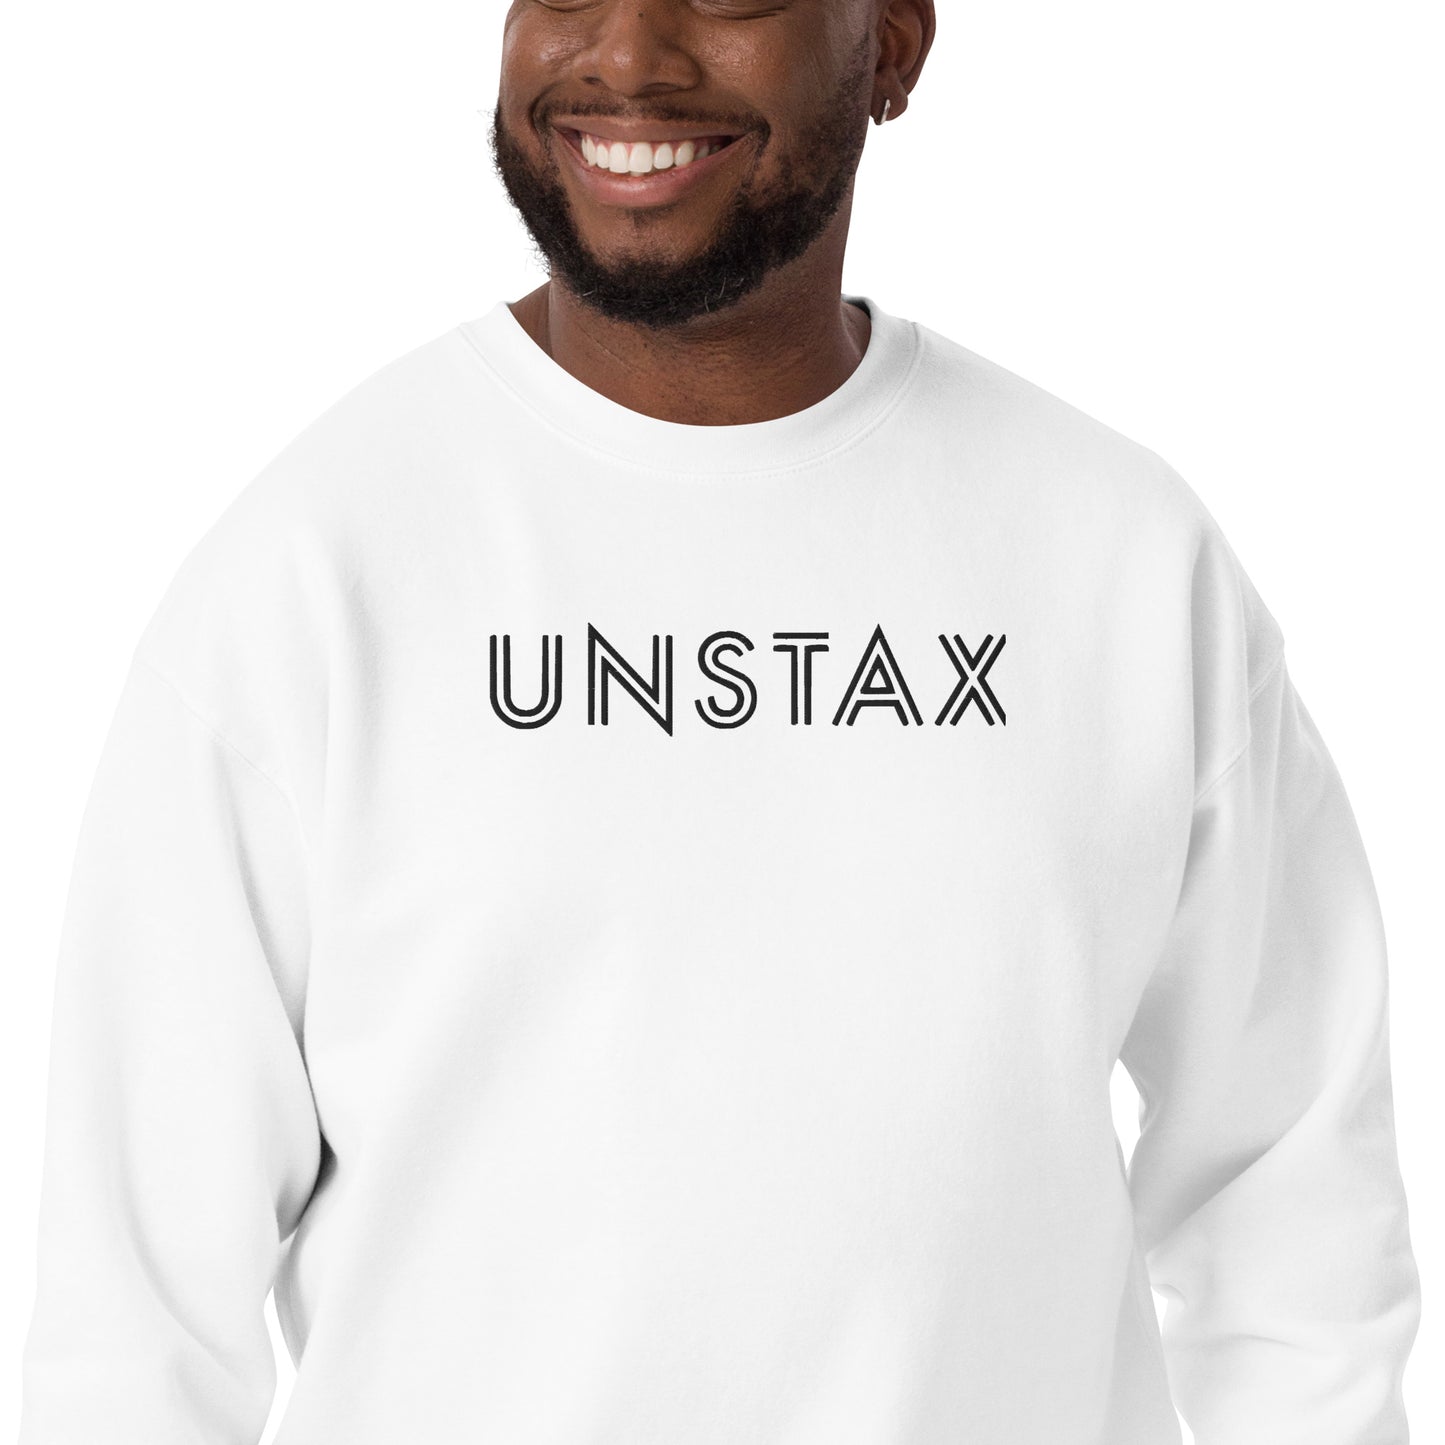 Unstax Embroidered Unisex Premium Sweatshirt